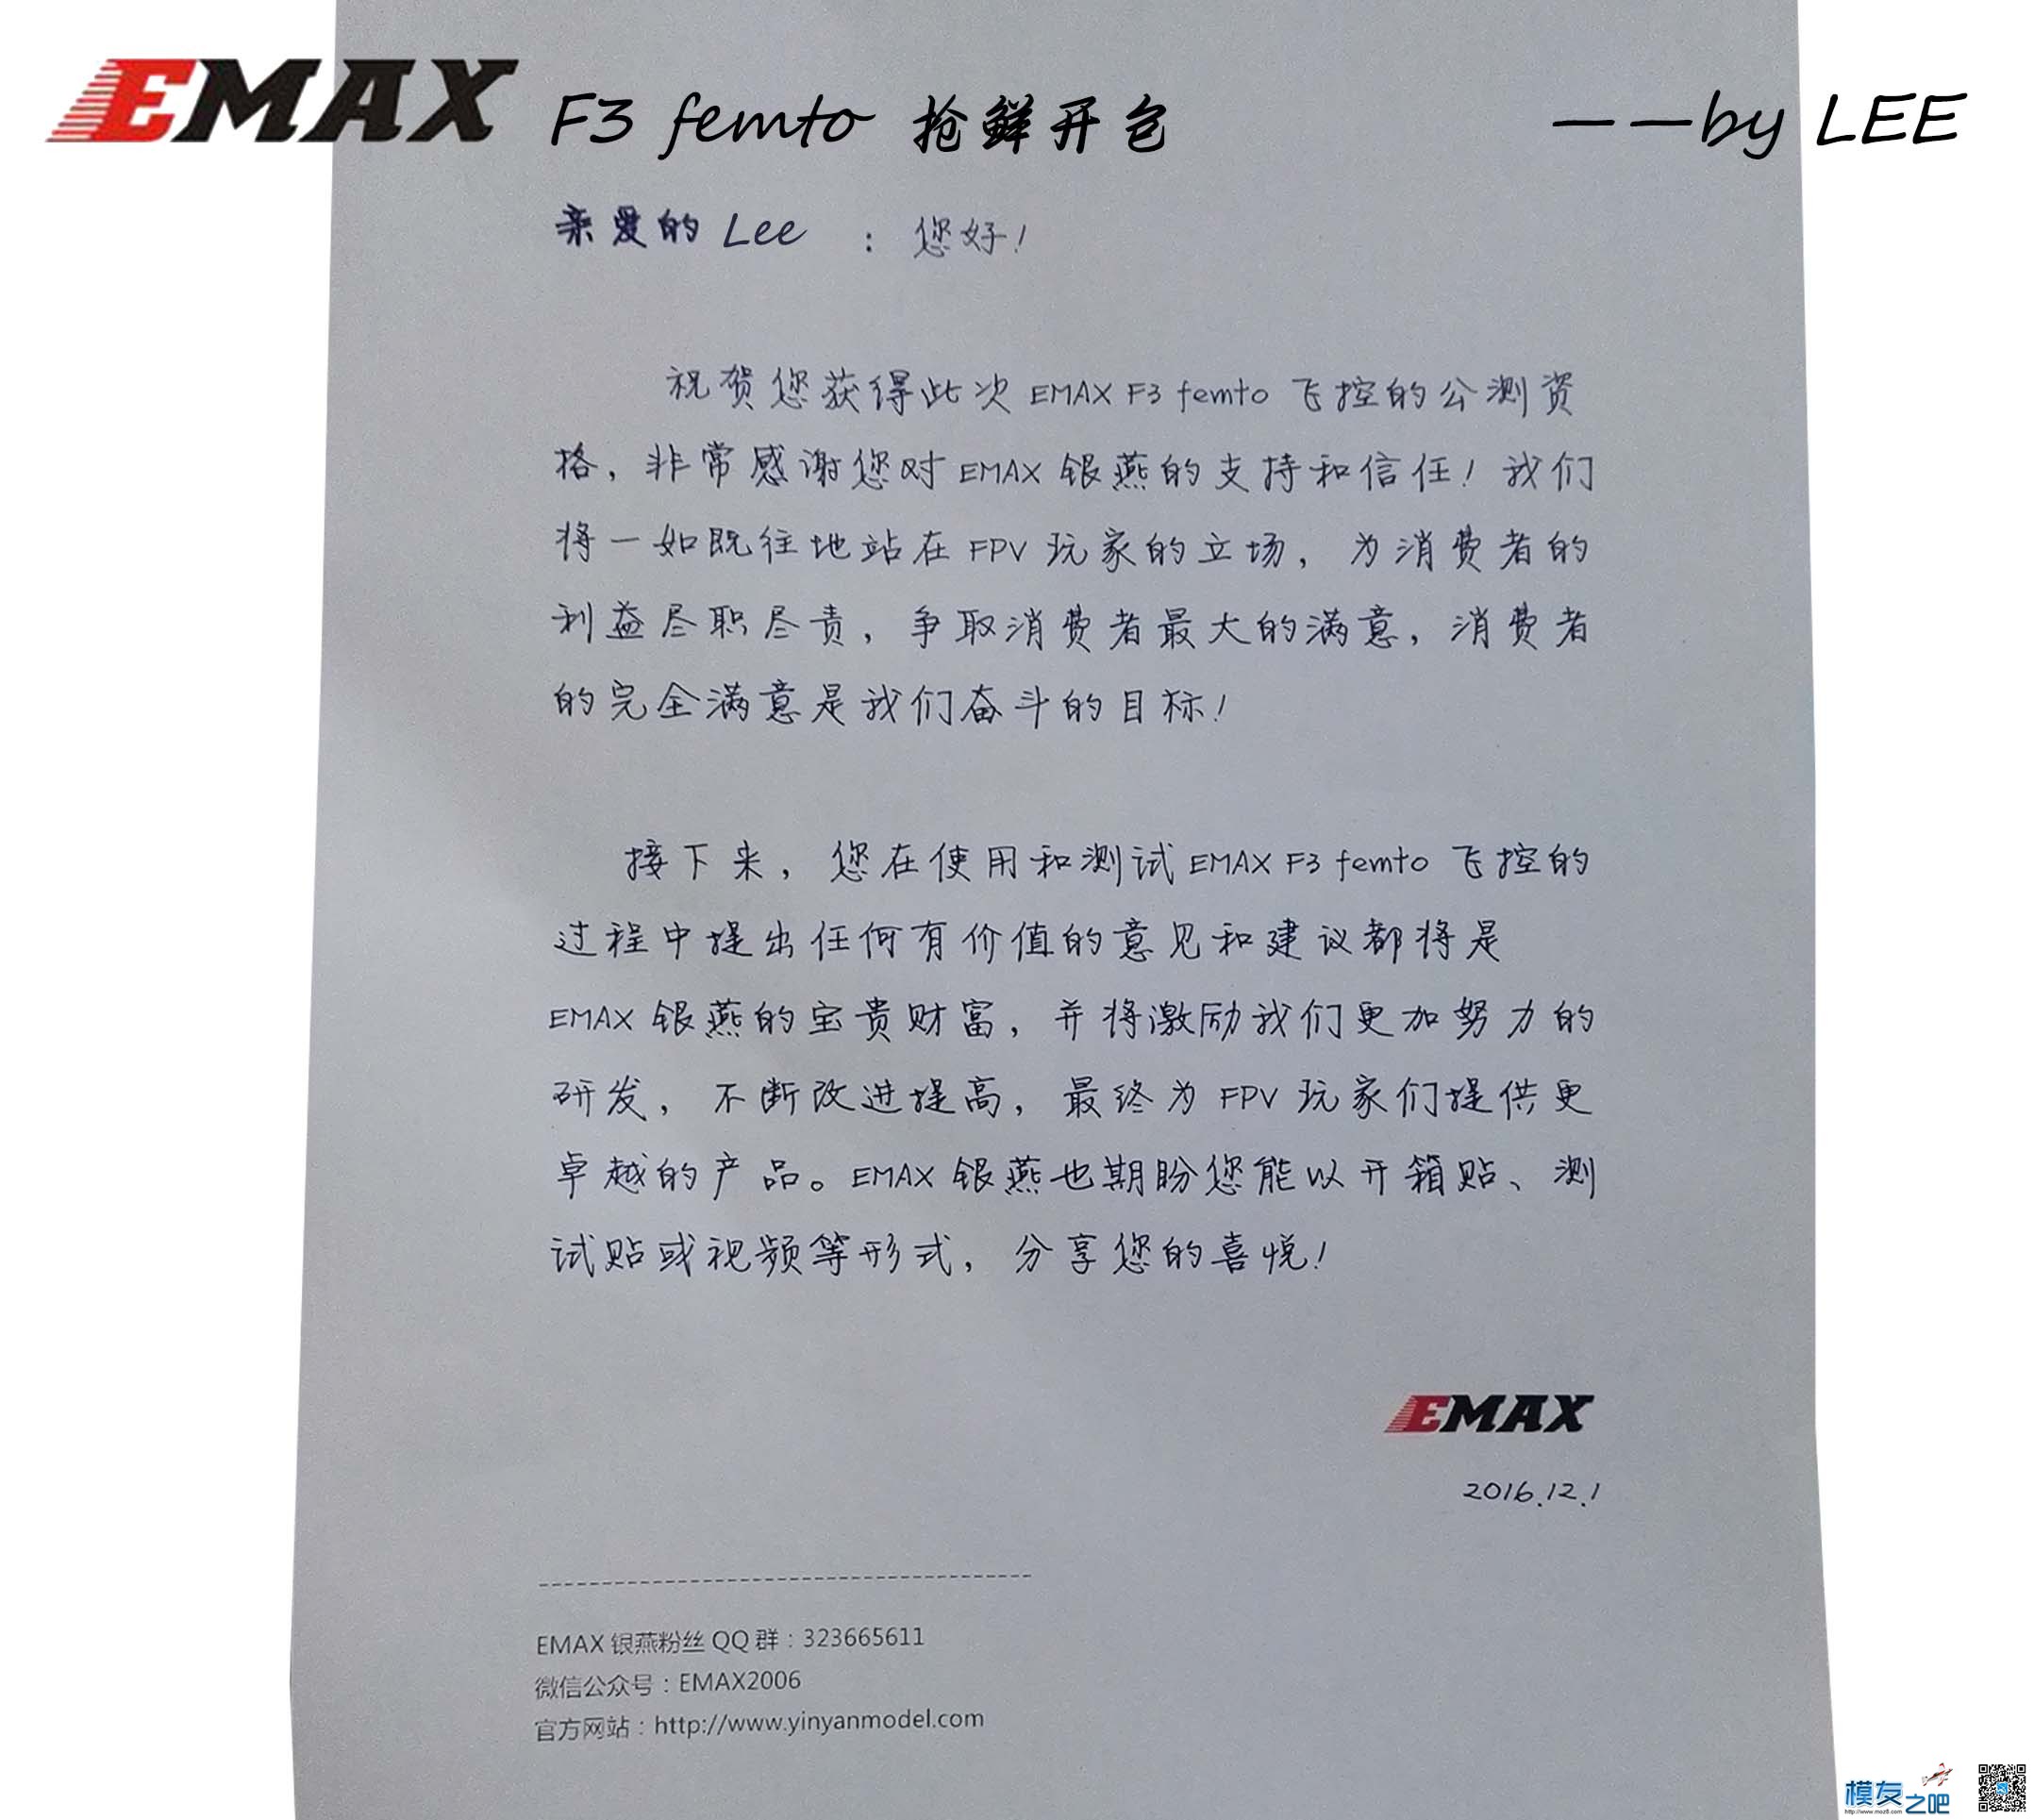 [LEE]EMAX 银燕 F3 femto飞控免费公测开包 飞控,银燕,免费,emax,有限公司 作者:lee 3573 